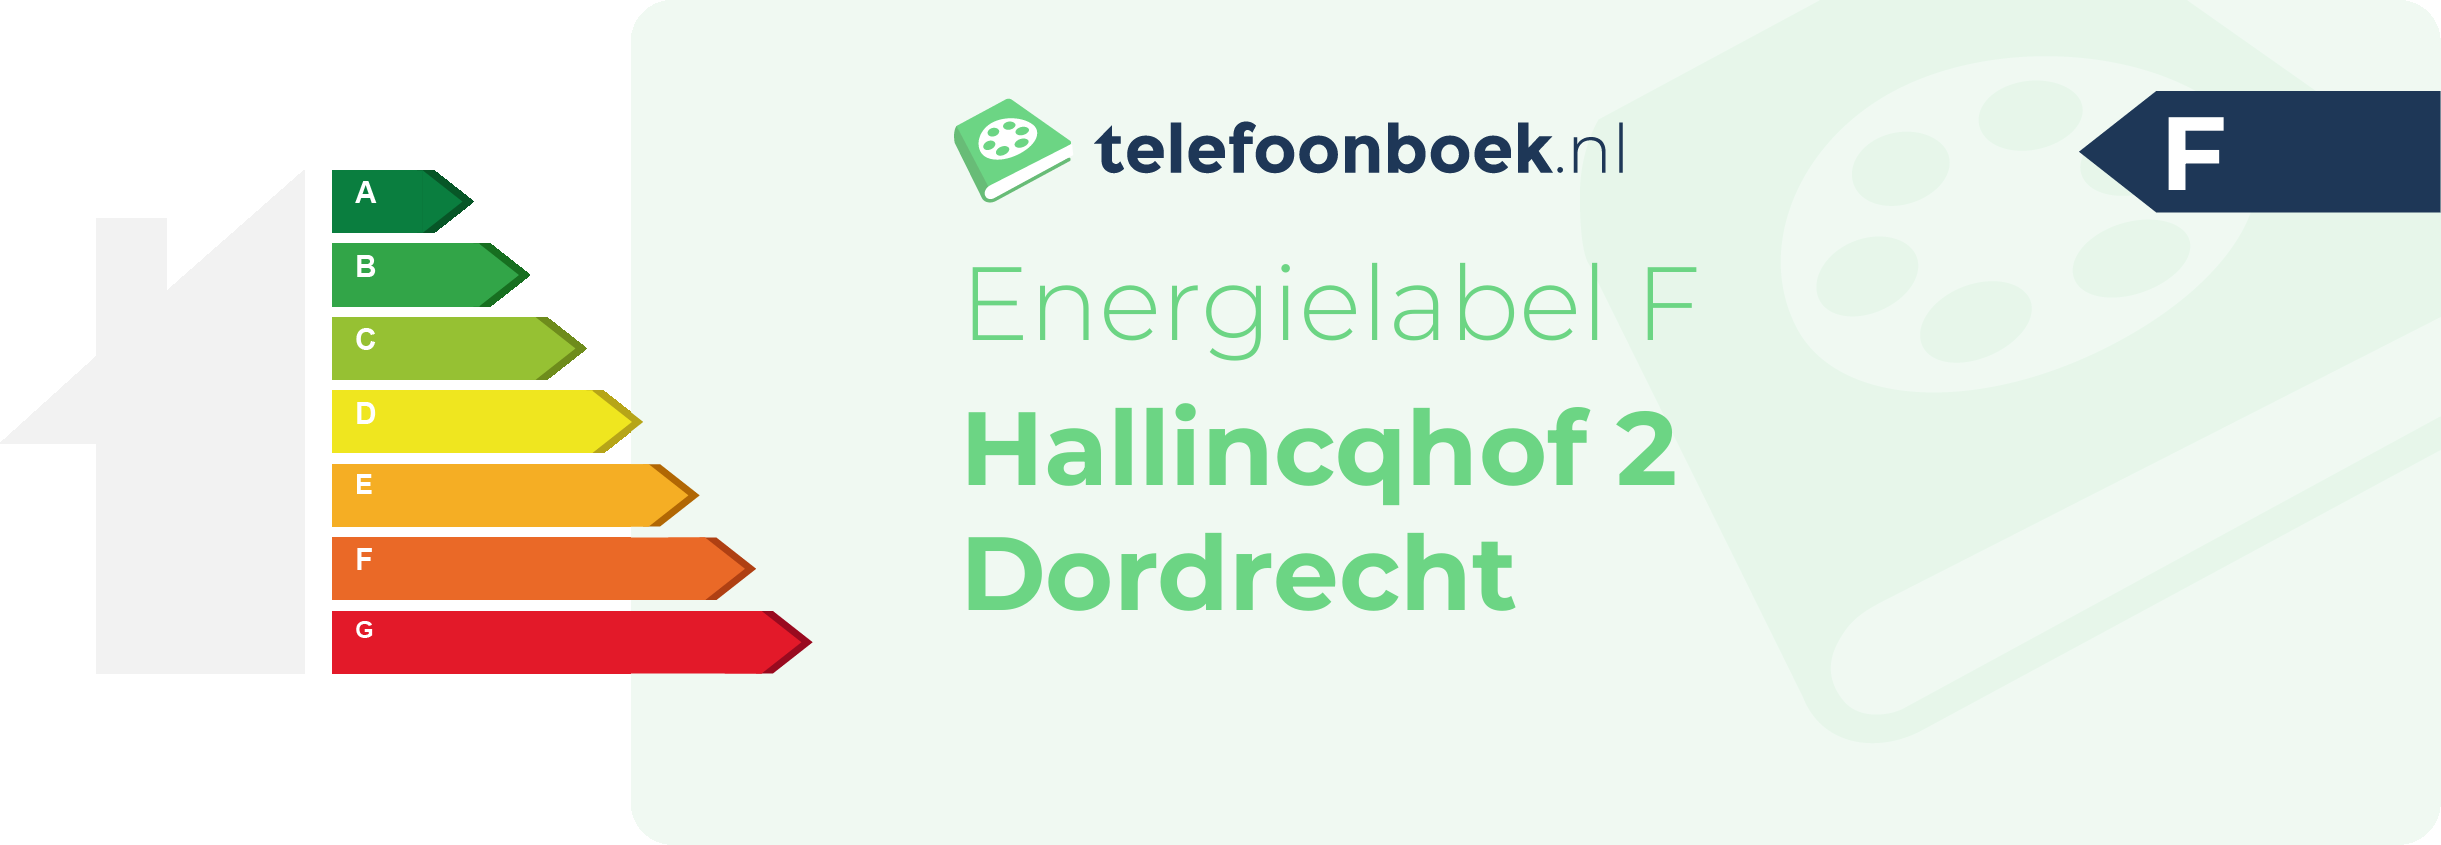 Energielabel Hallincqhof 2 Dordrecht